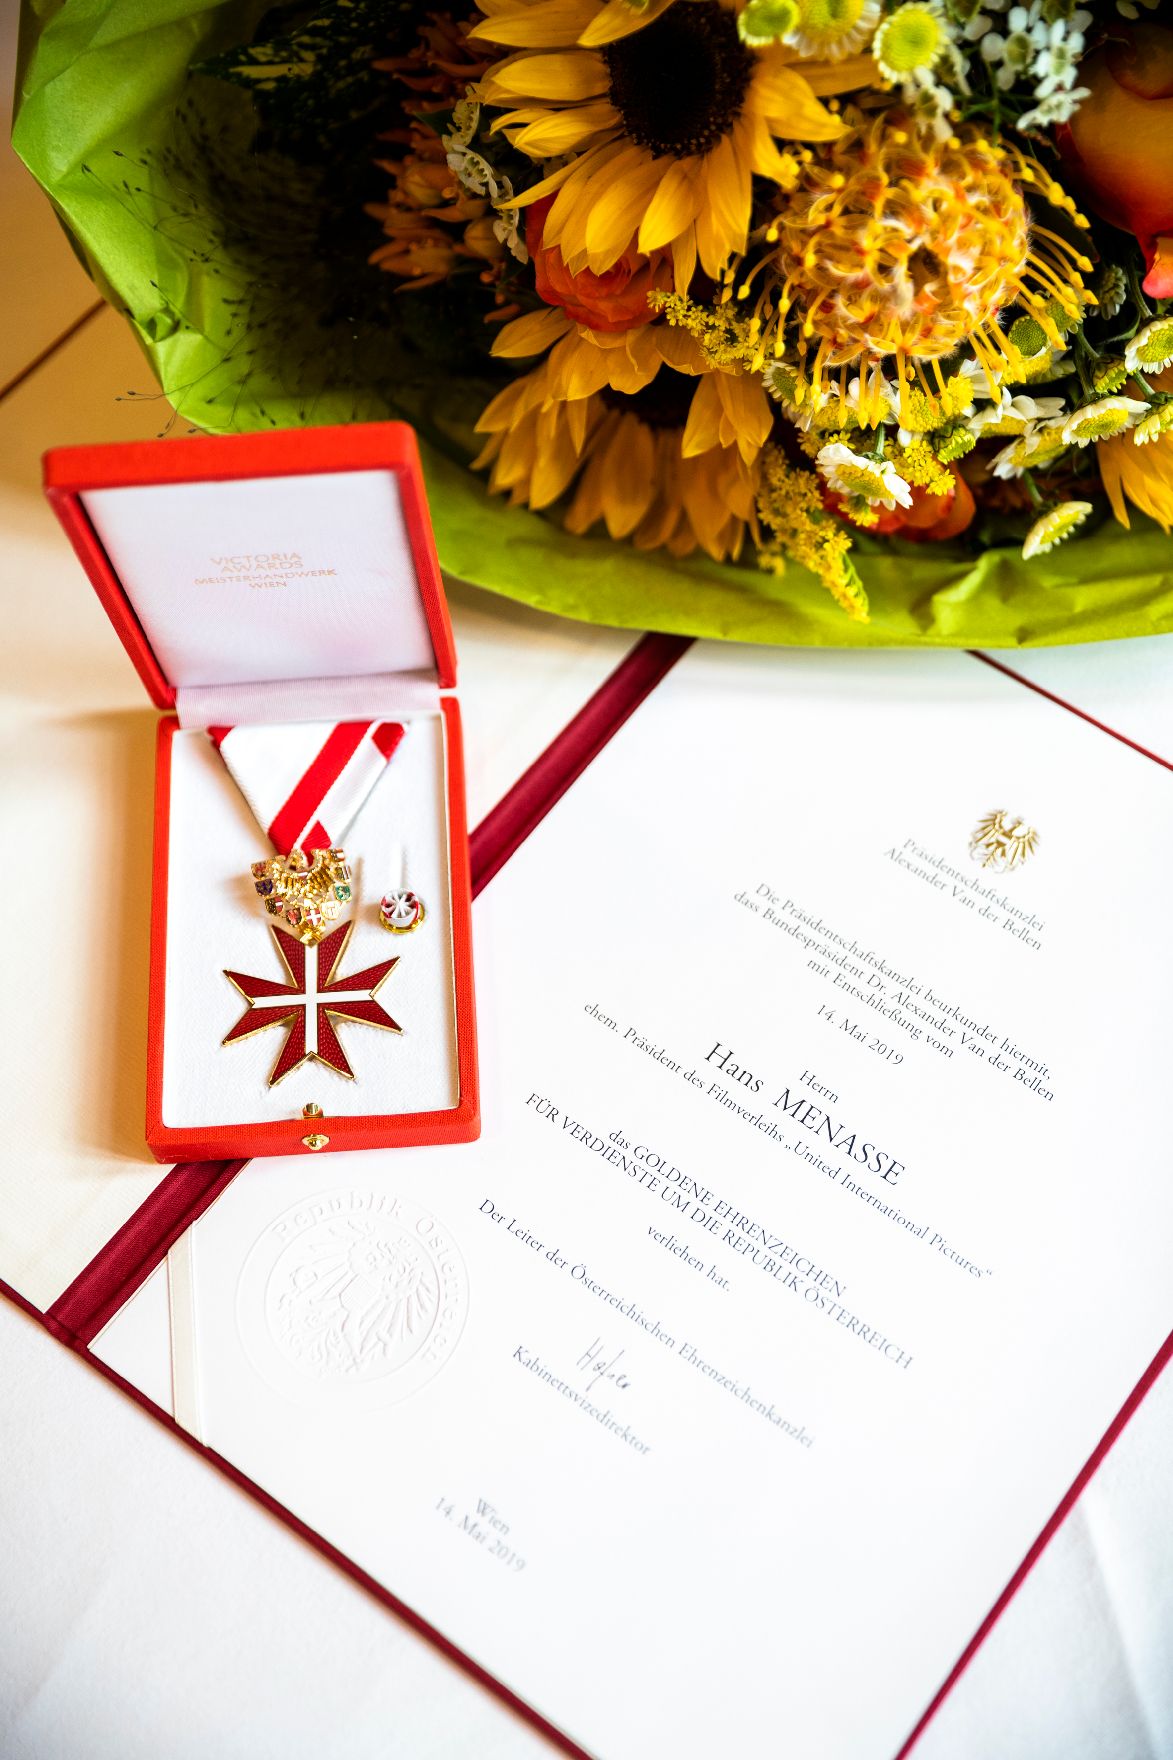 Am 7. Oktober 2019 überreichte Sektionschef Jürgen Meindl das Goldene Ehrenzeichen für Verdienste um die Republik Österreich an Hans Menasse.